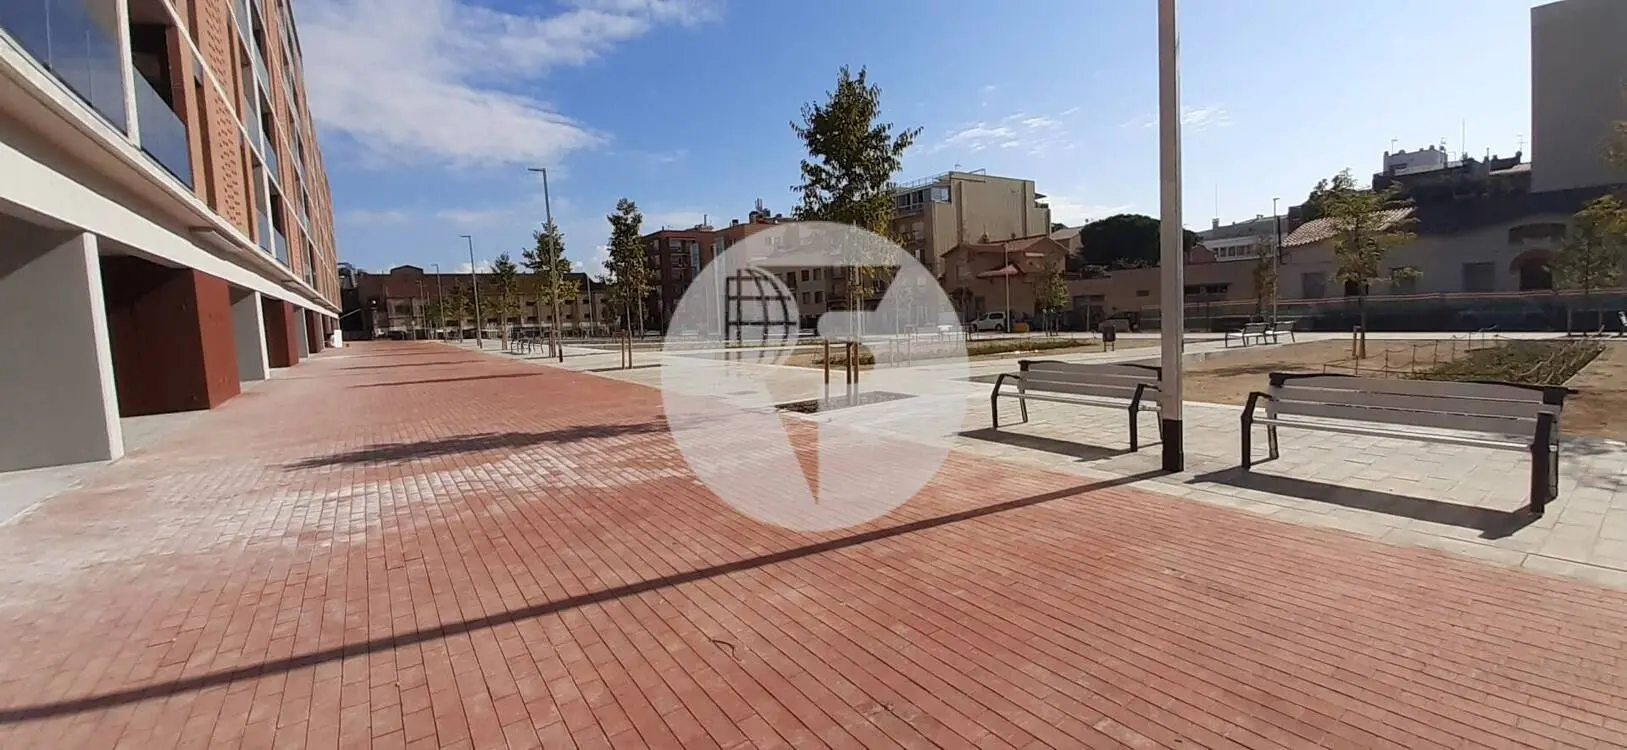 Local comercial de Obra Nueva en Sabadell IE-220757 2